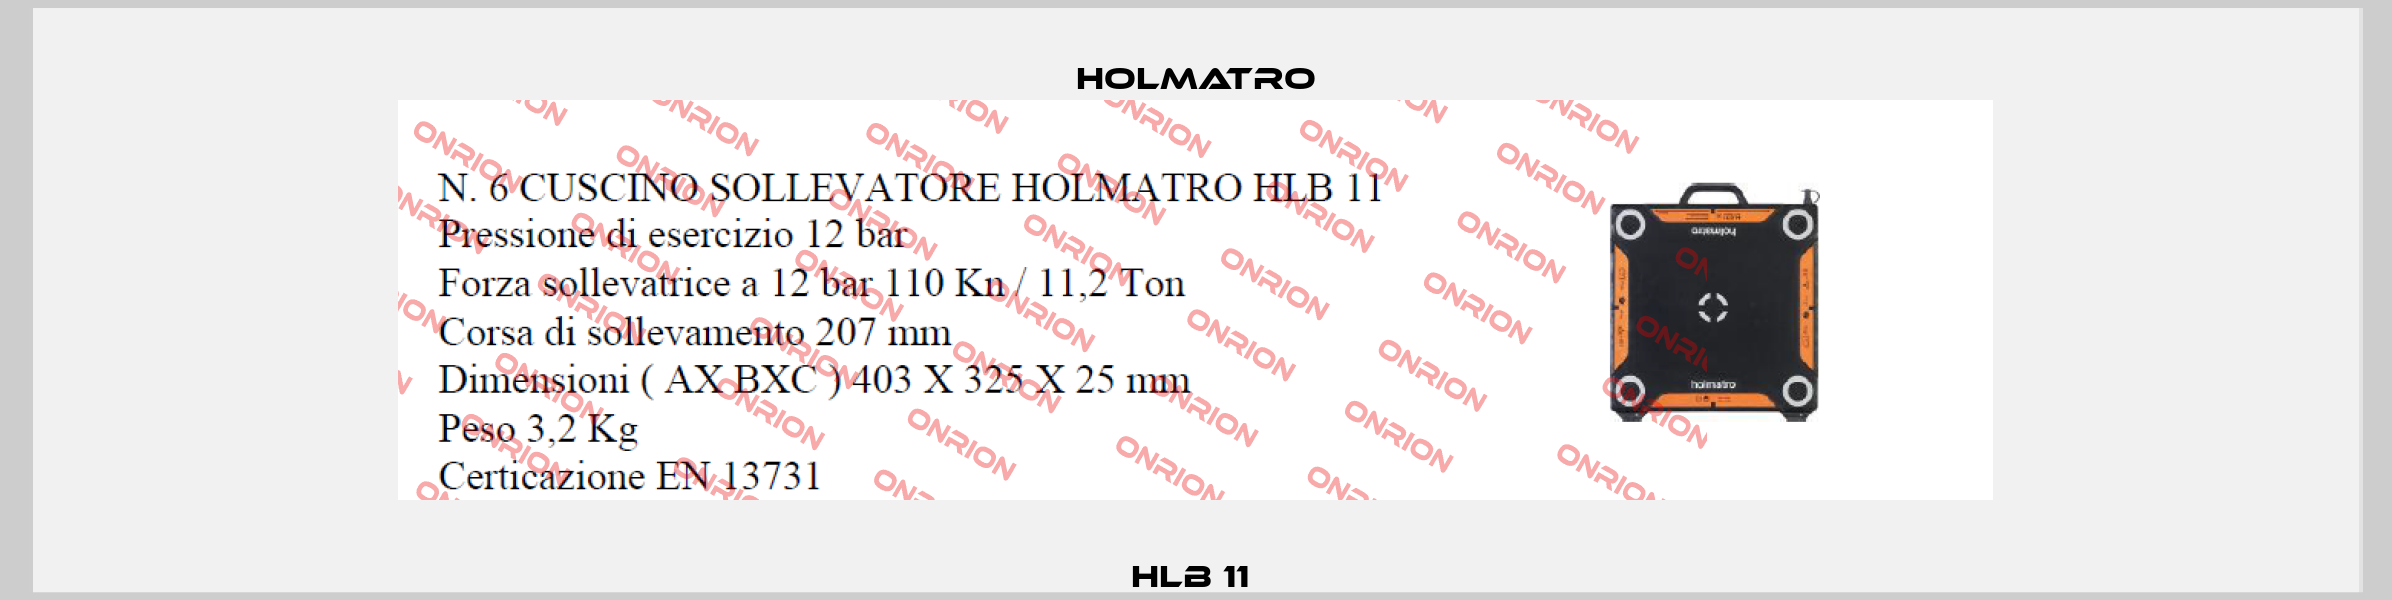 HLB 11  Holmatro